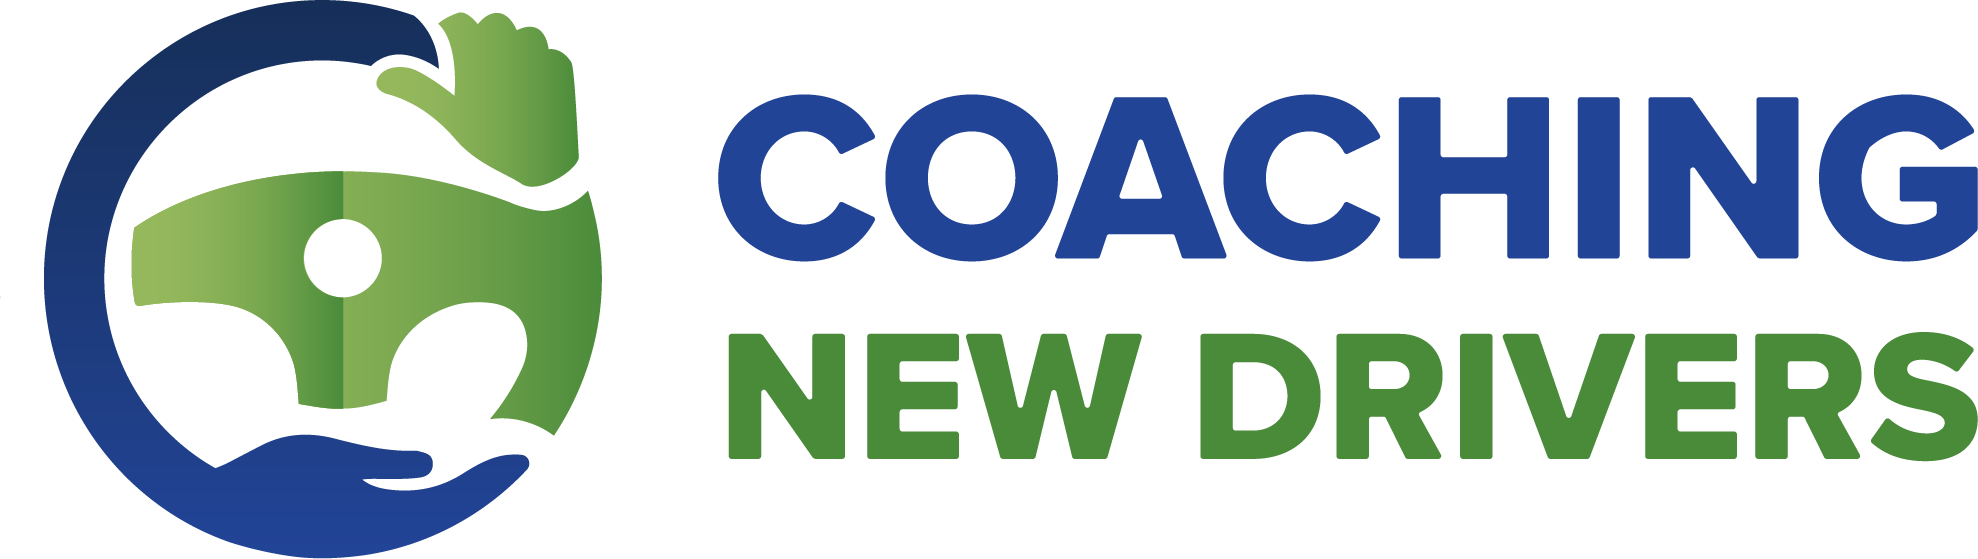 Coaching New Drivers logo